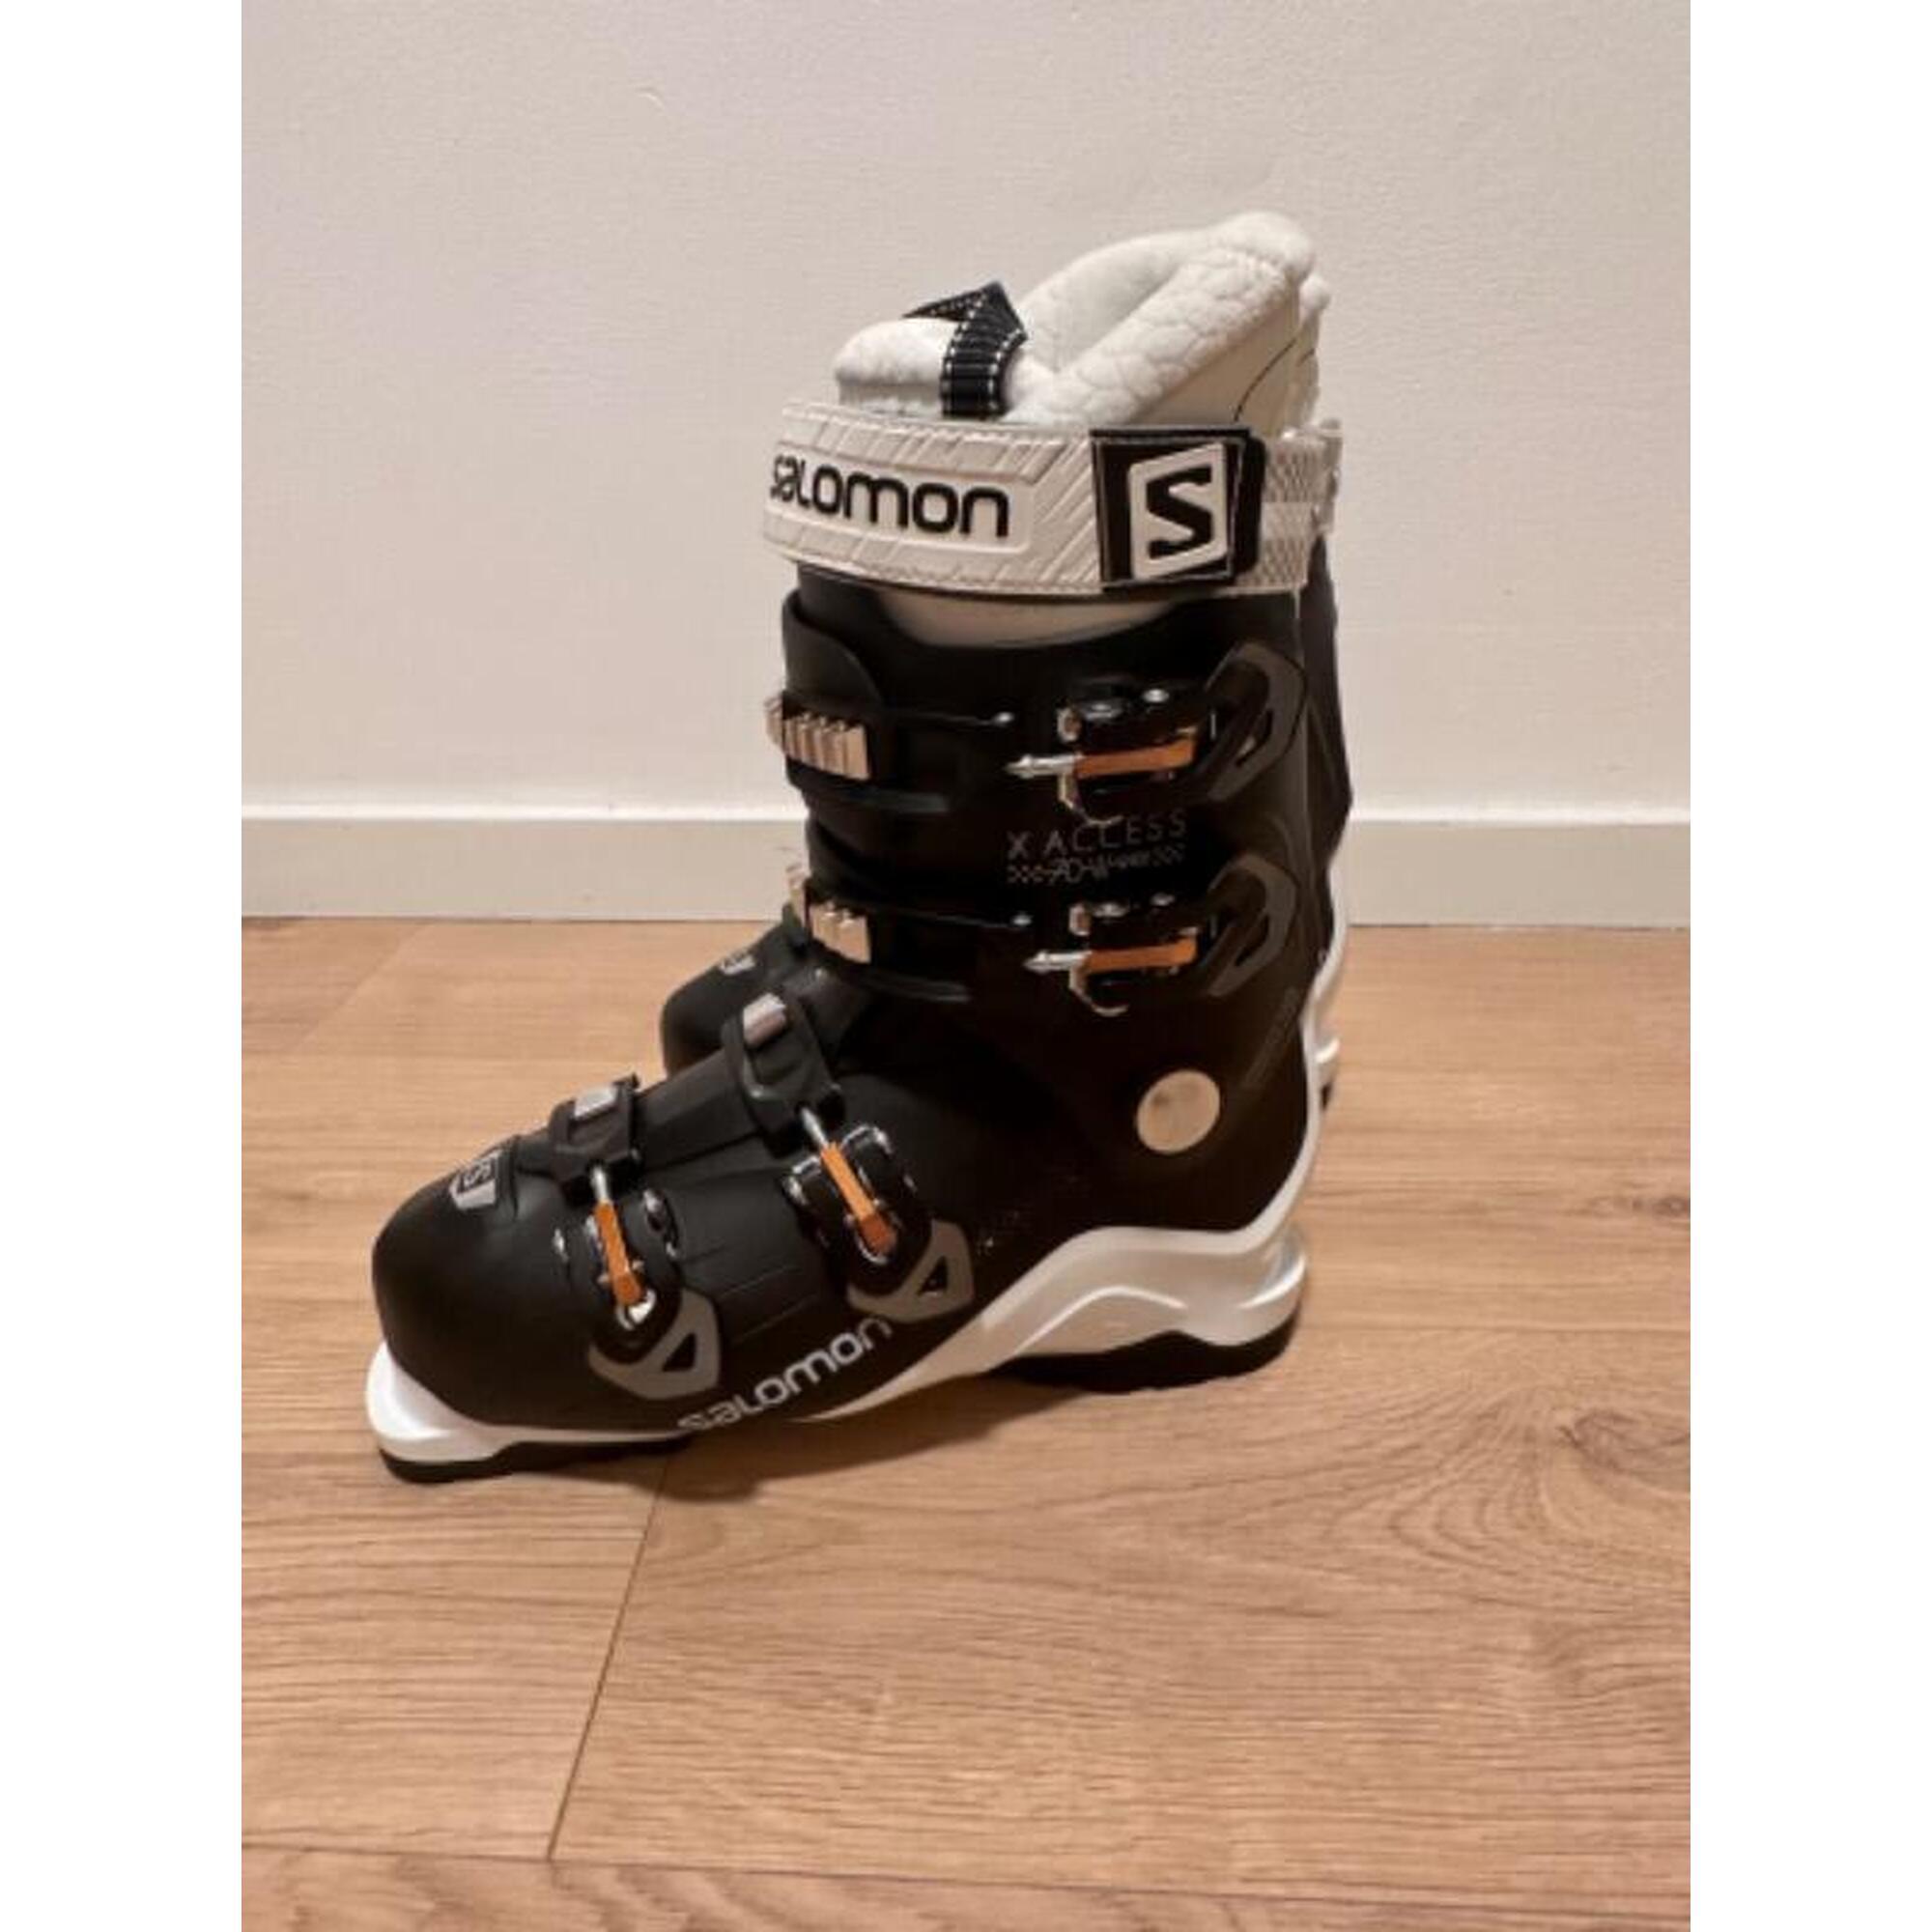 C2C - Salomon skischoenen